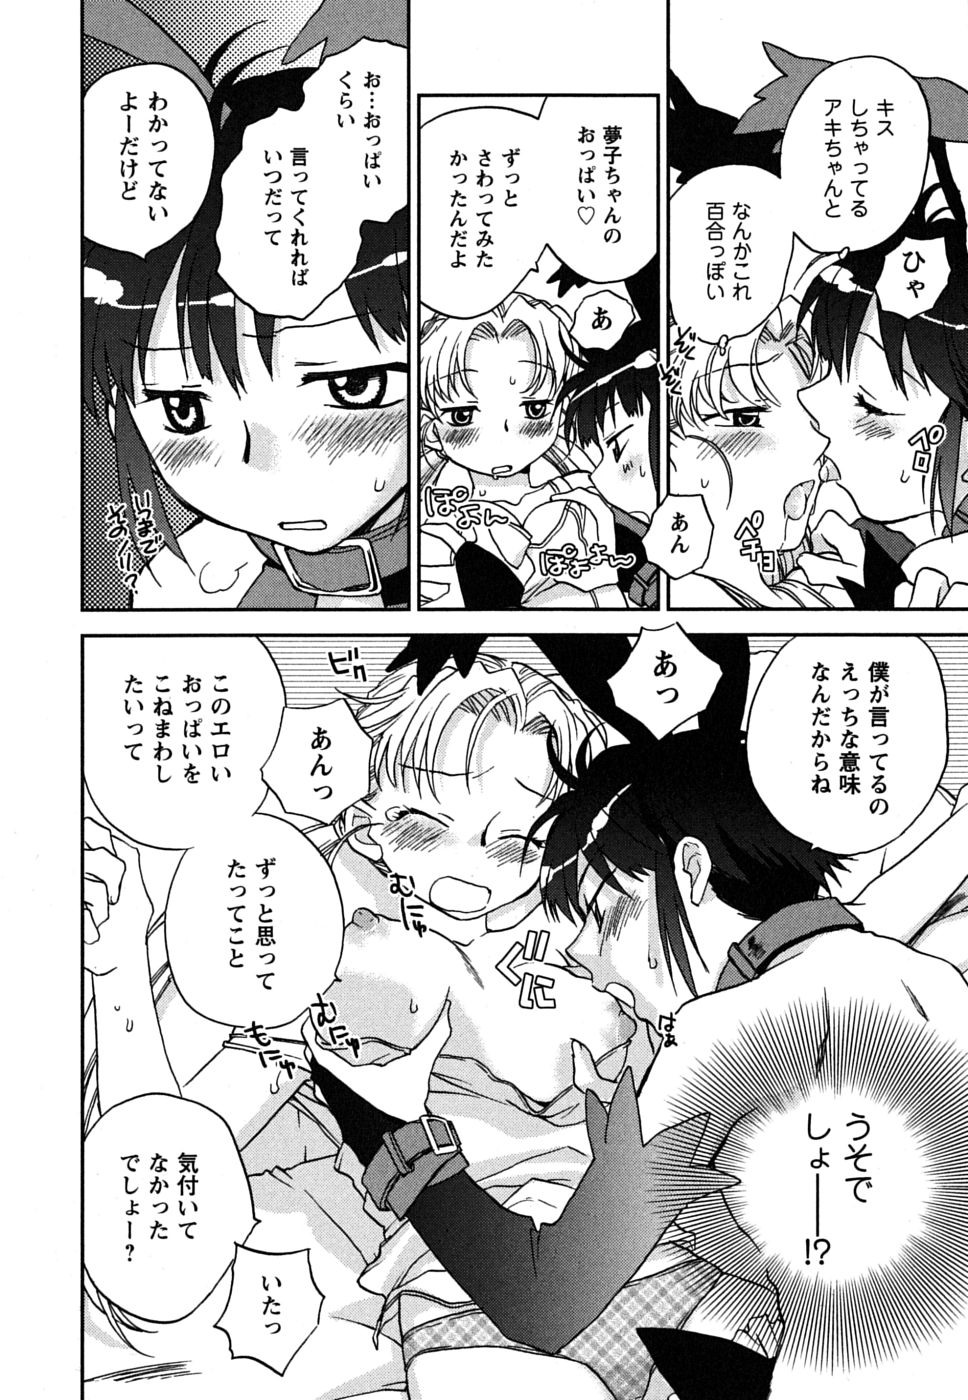 [Okano Ahiru] Shoujo no Mousou wa Itsu Hiraku? - When does her dream come true? page 41 full